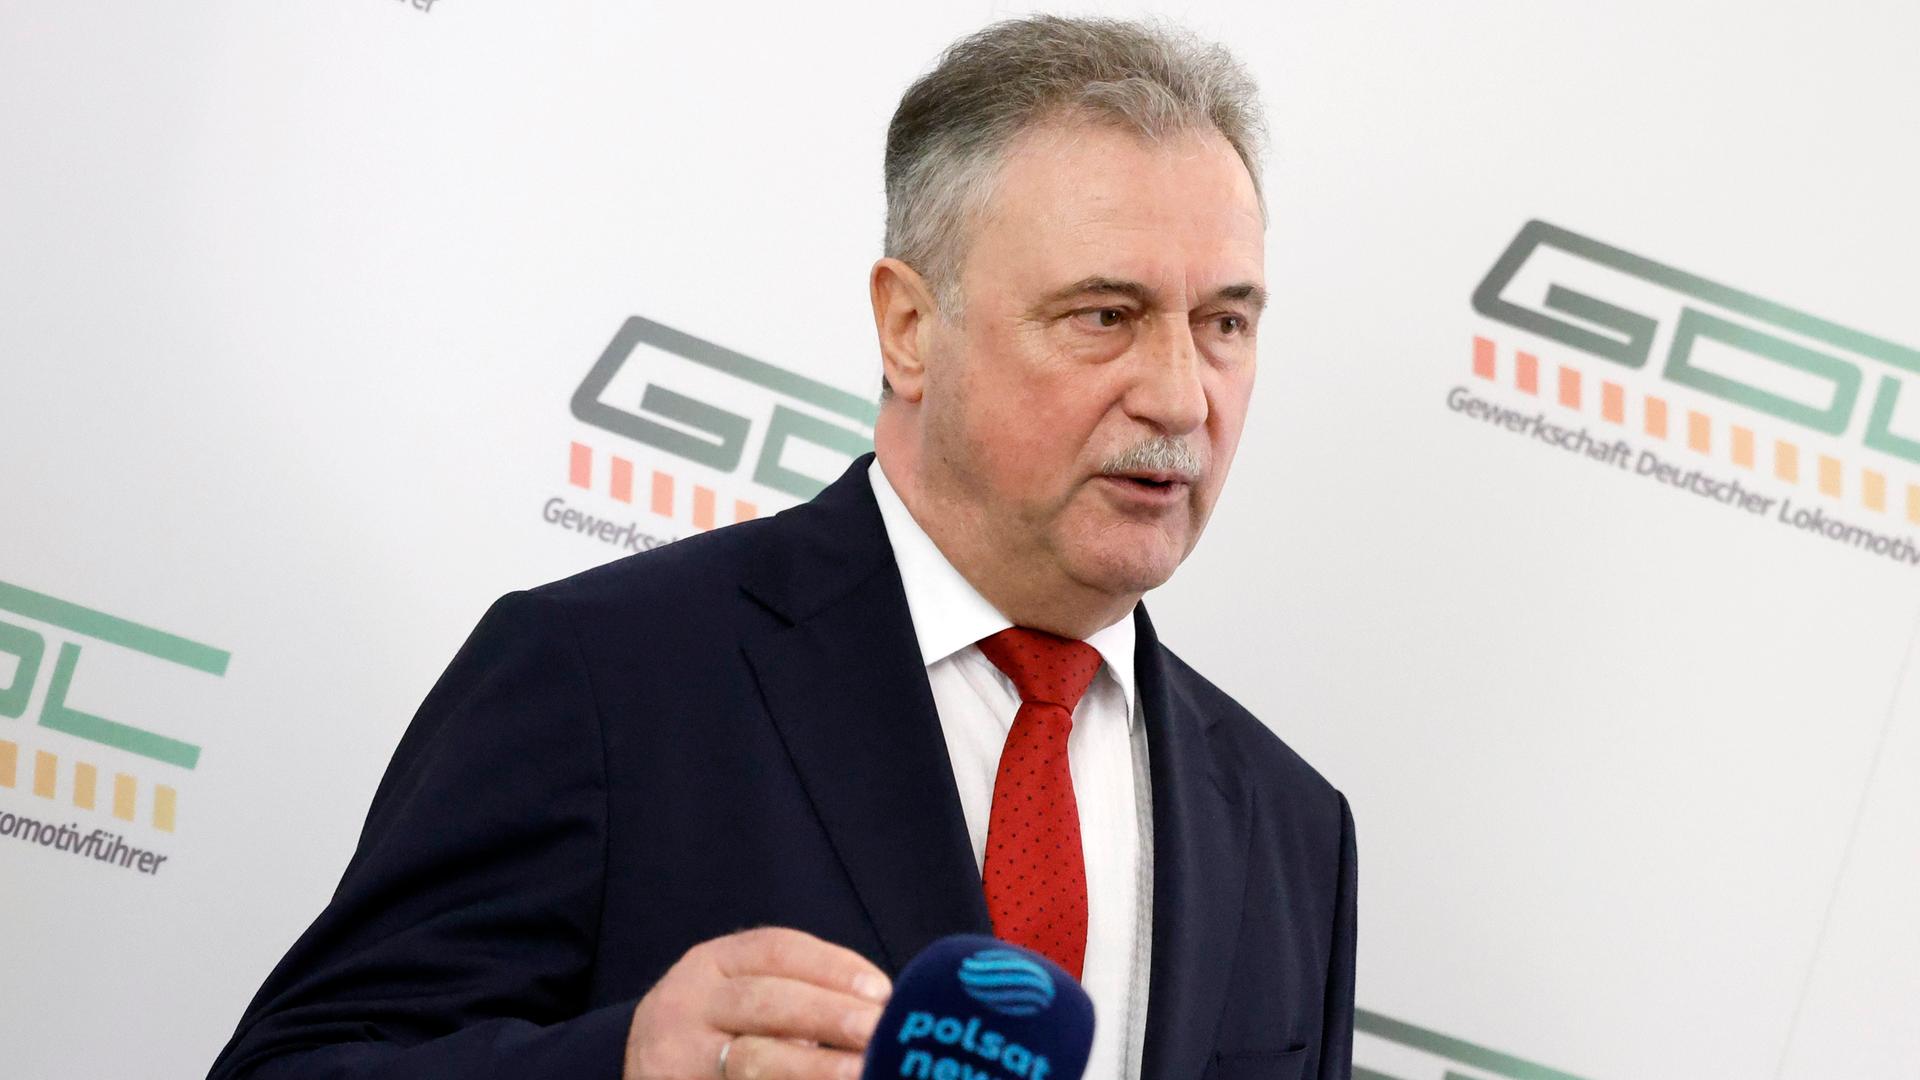 Claus Weselsky, Vorsitzender der Gewerkschaft Deutscher Lokomotivführer (GDL), spricht bei einer Pressekonferenz zu bevorstehenden Streiks. Die GDL hat einen weiteren Streik im Tarifkonflikt mit der Deutschen Bahn angekündigt.